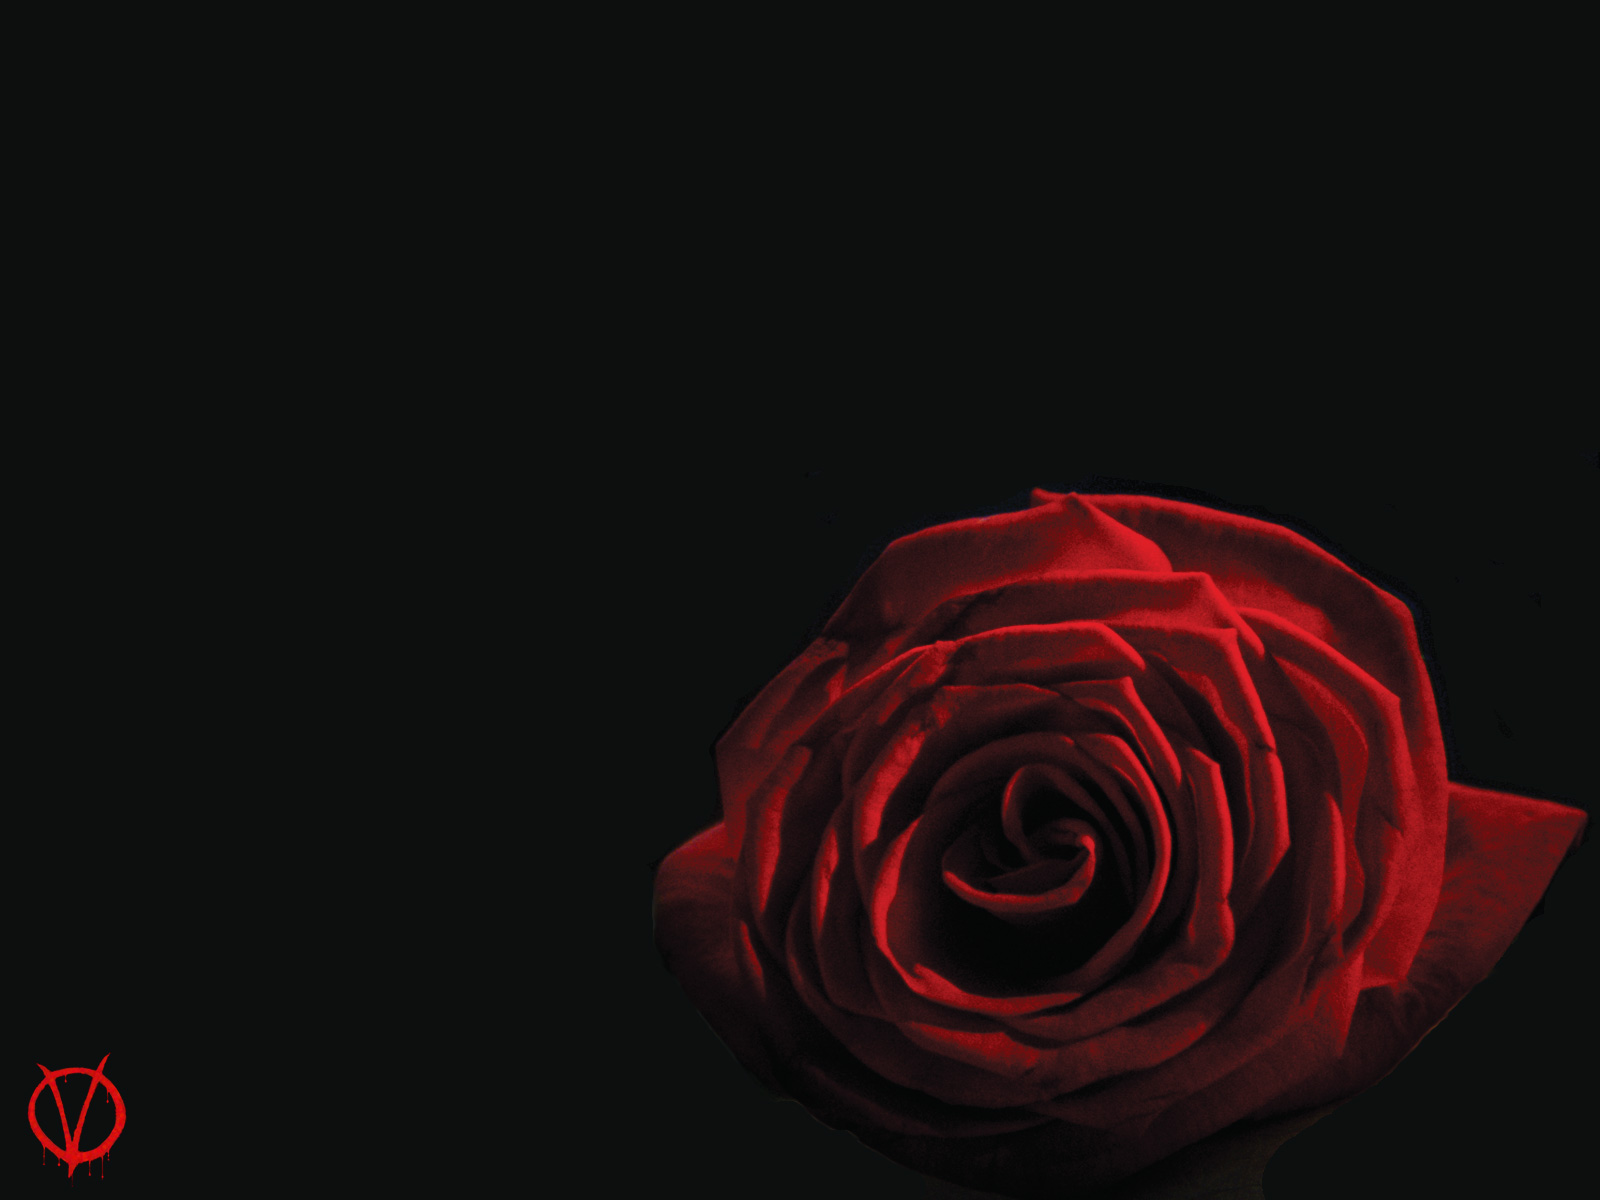 v for vendetta wallpaper,garden roses,red,rose,black,petal